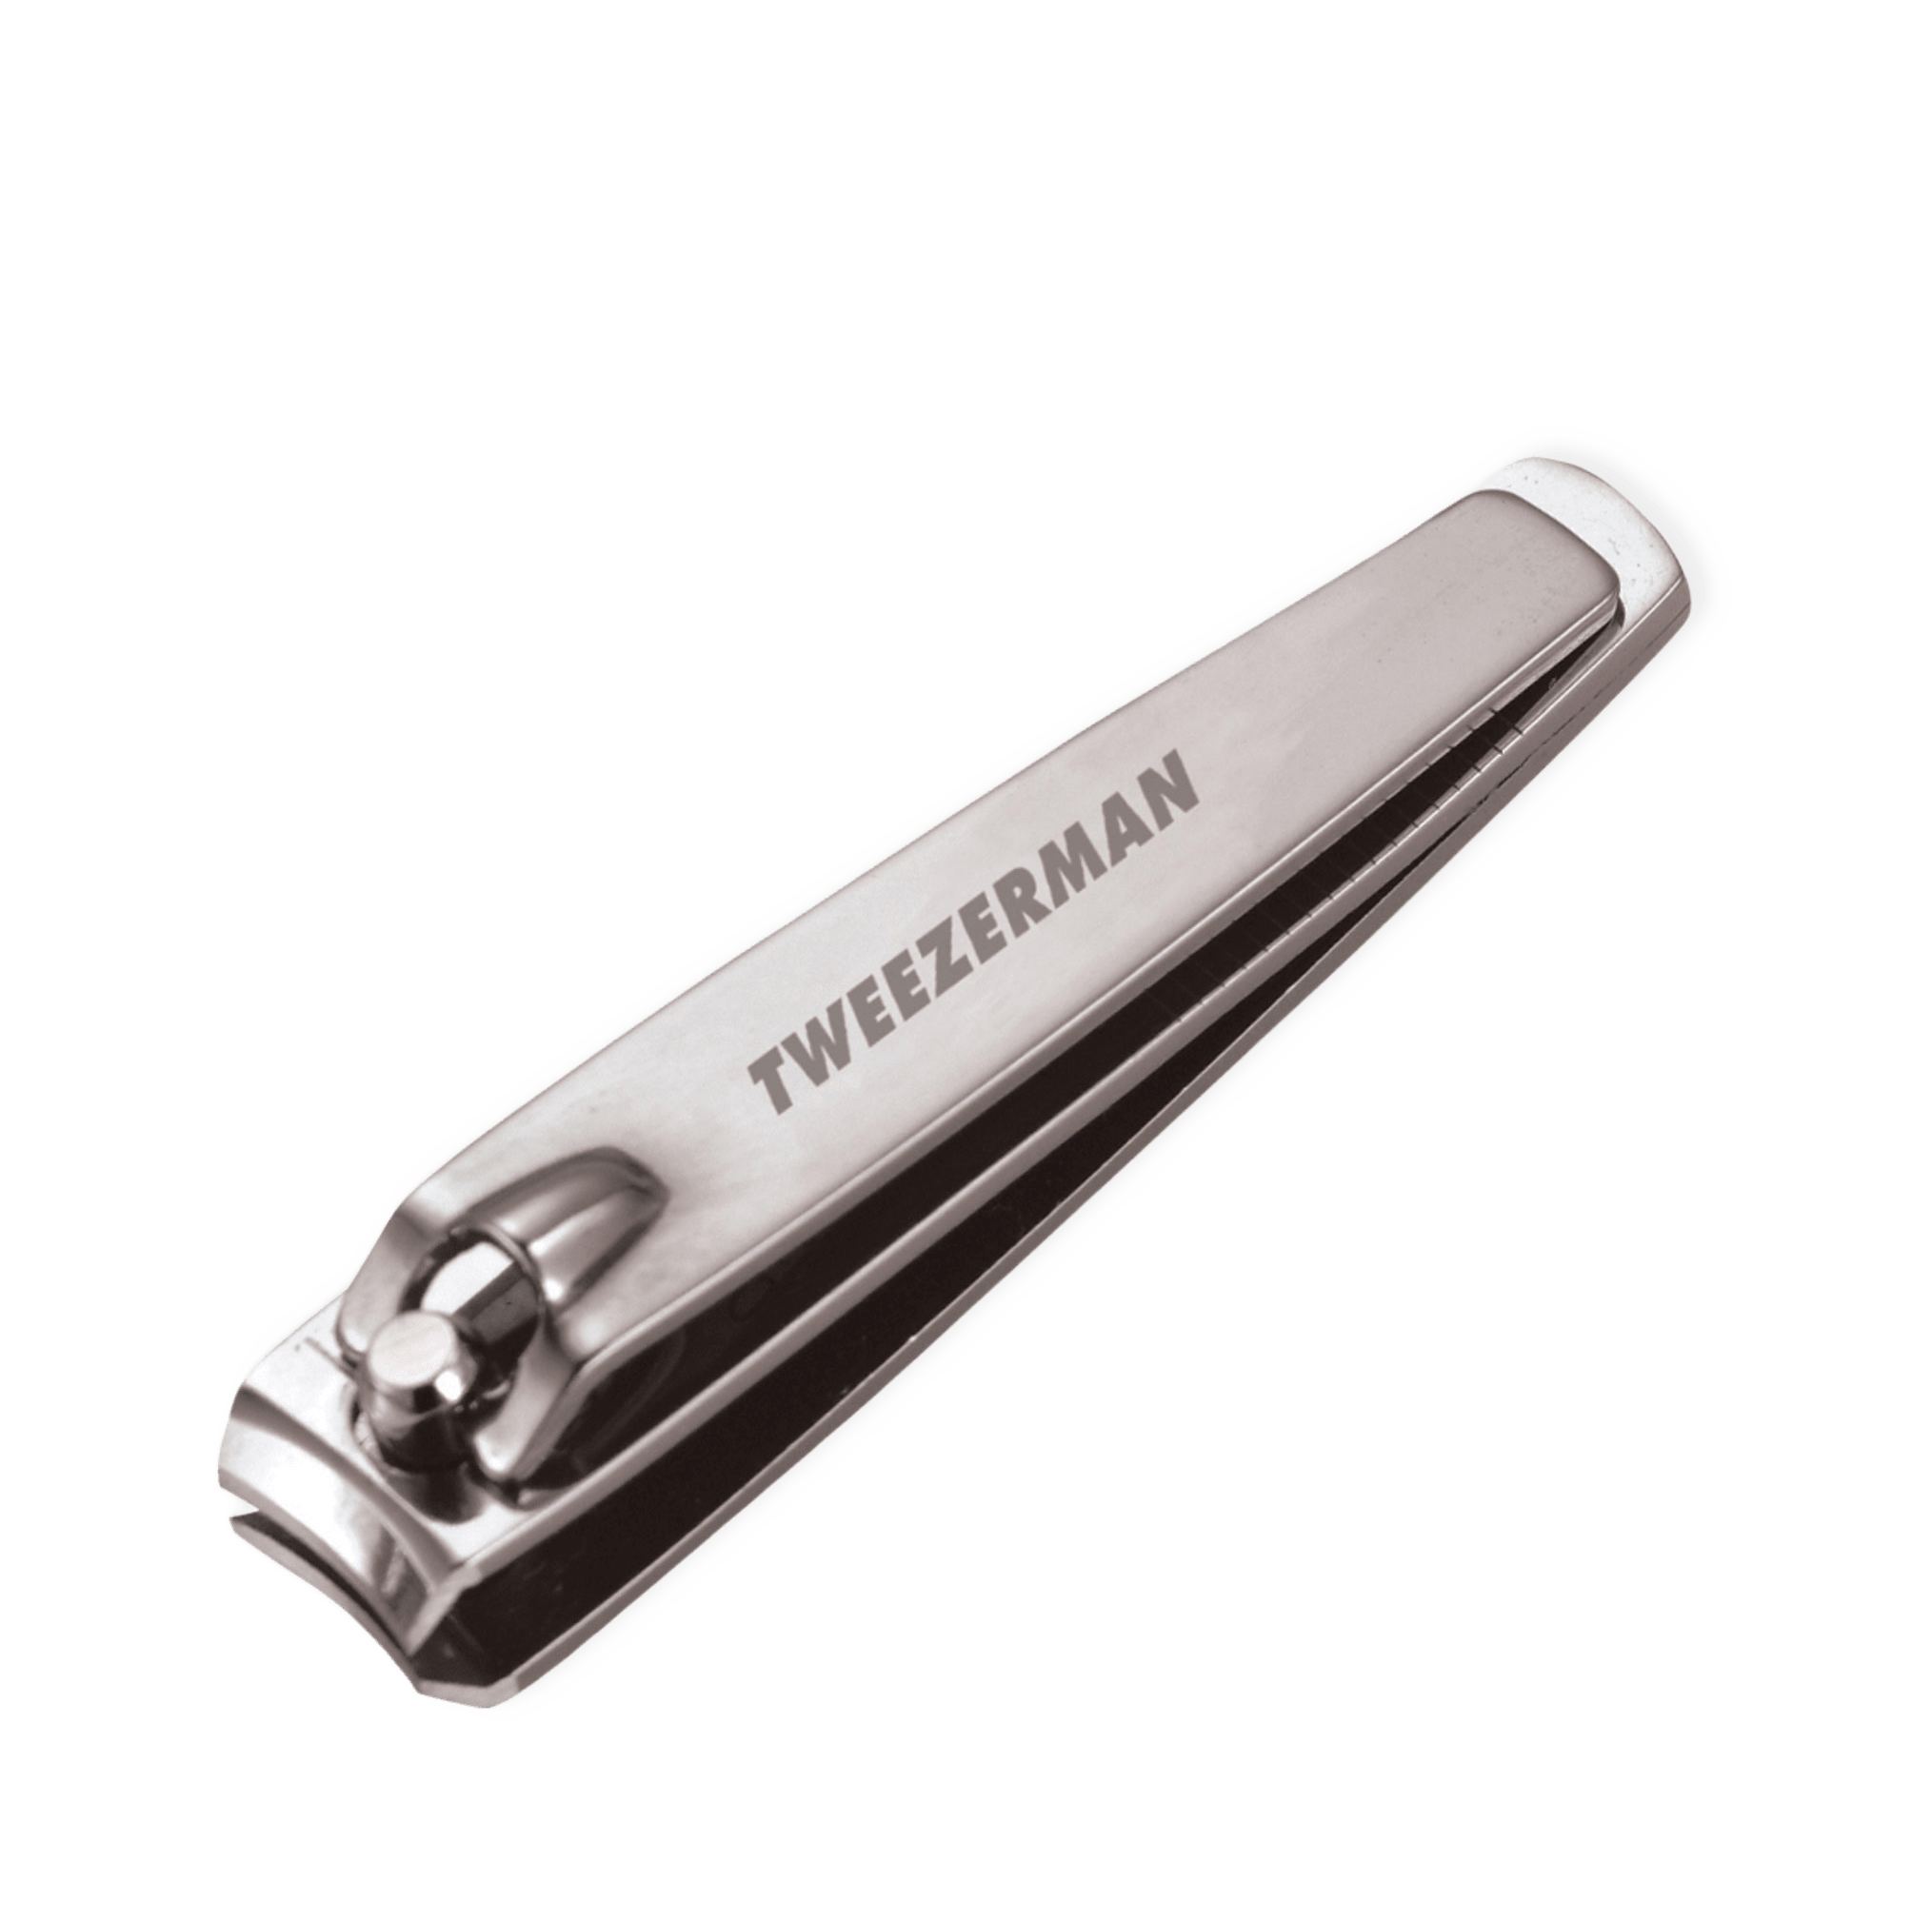 Stainless Steel Fingernail Clipper från Tweezerman